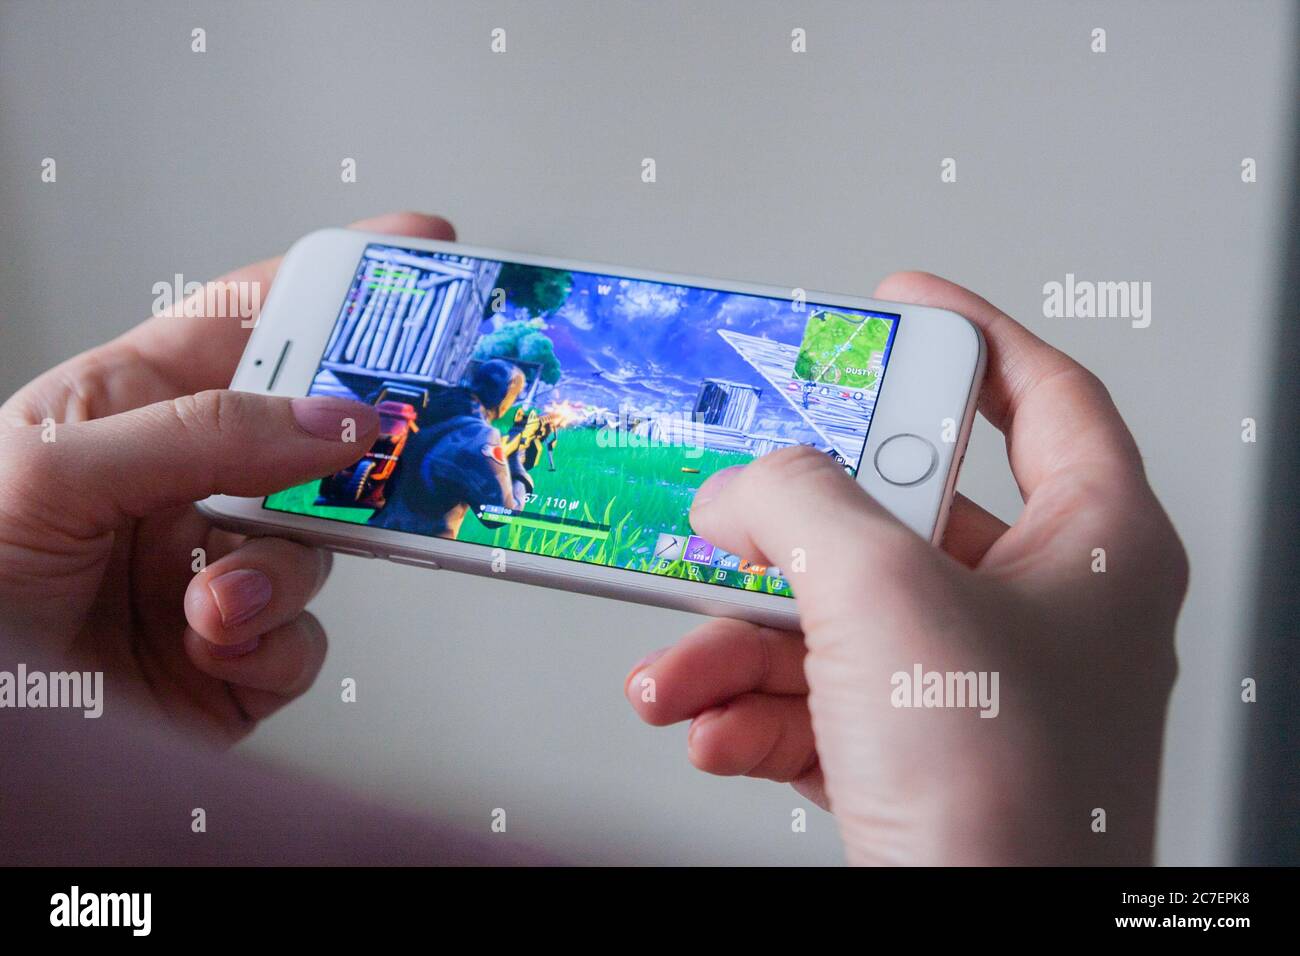 Los Angeles, California, USA - 8 Marzo 2019: Mani che tengono uno smartphone con il gioco Fortnite sullo schermo, editoriale illustrativo Foto Stock